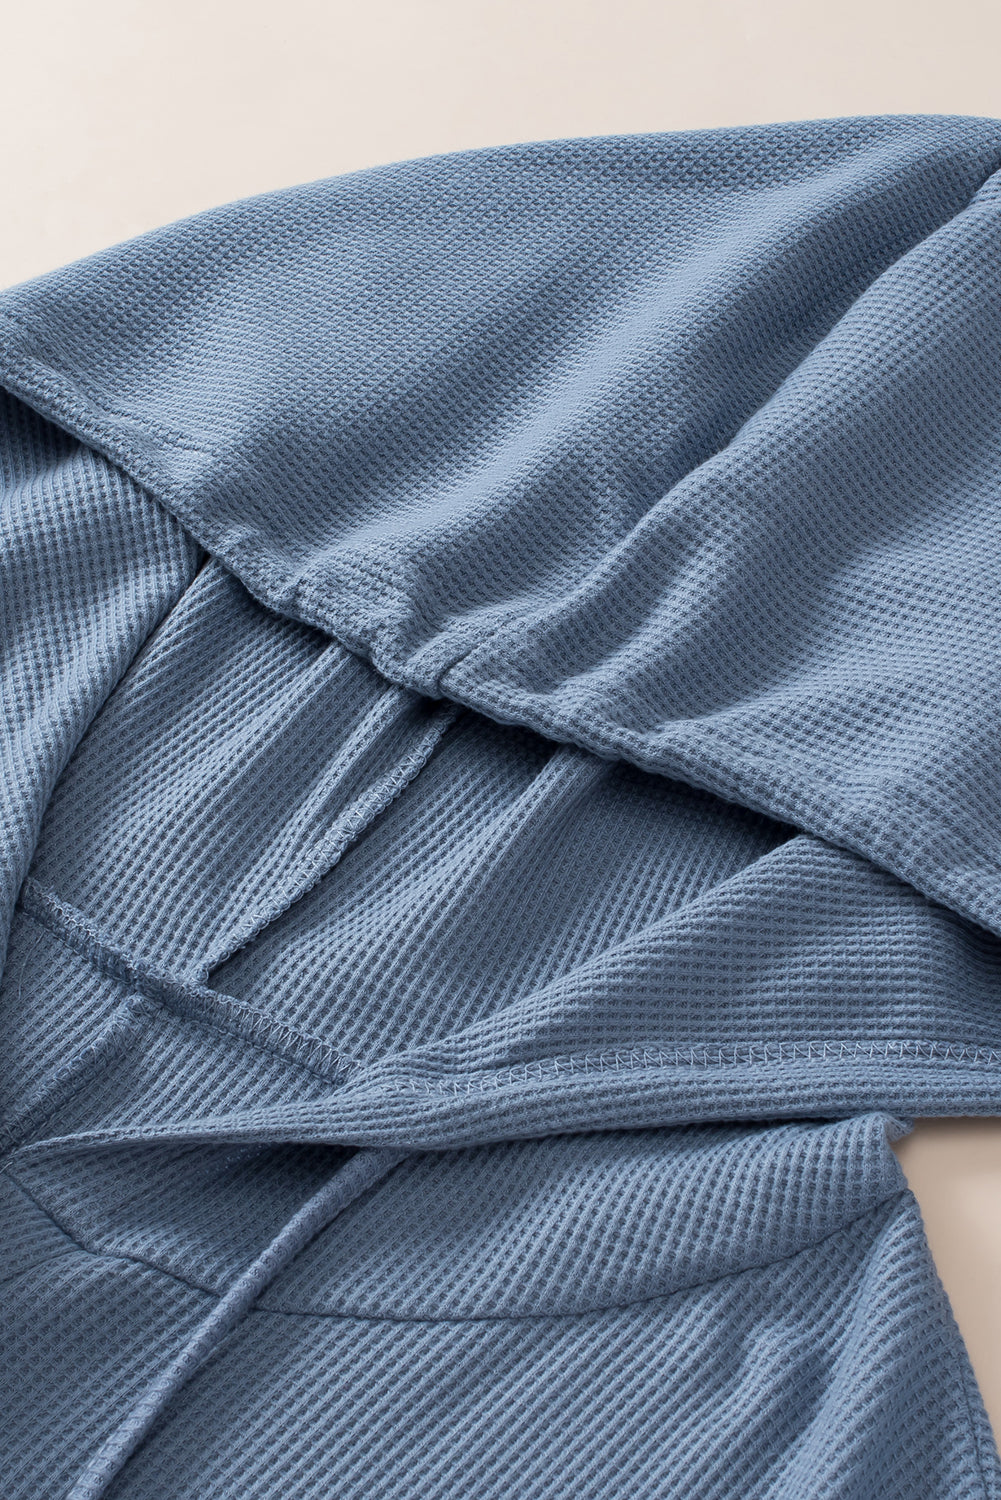 Ashleigh modra velika, vafelj pletena majica s kapuco s kratkimi rokavi in ​​vrvicami